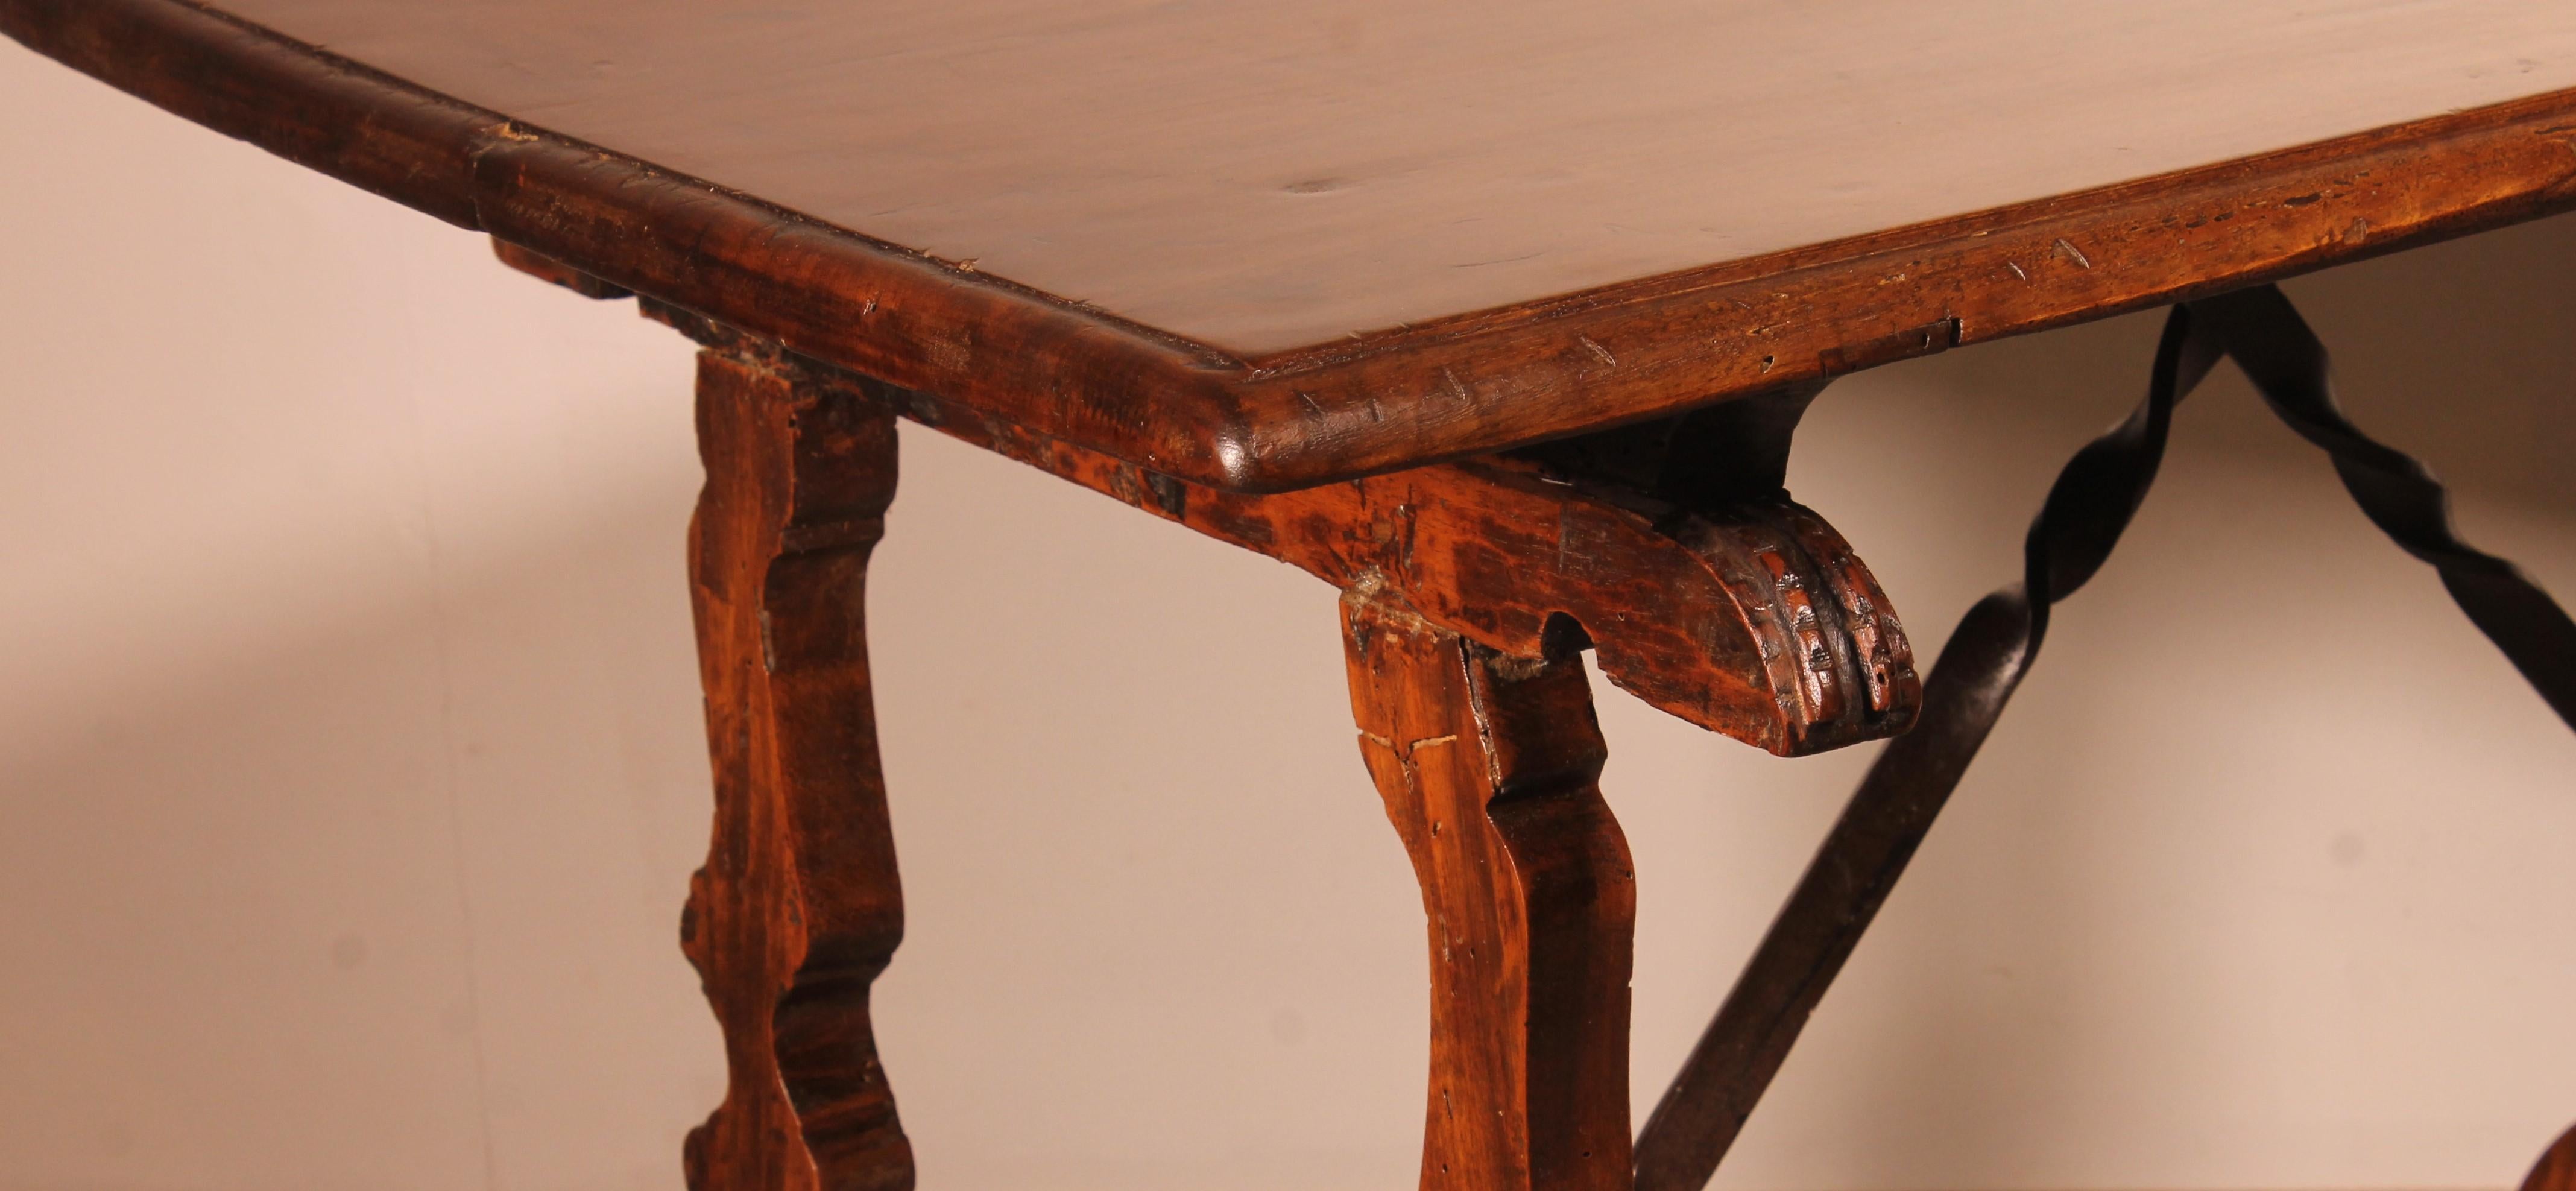 Spanischer Renaissance-Tisch aus Nussbaumholz, 17. Jahrhundert (18. Jahrhundert und früher)